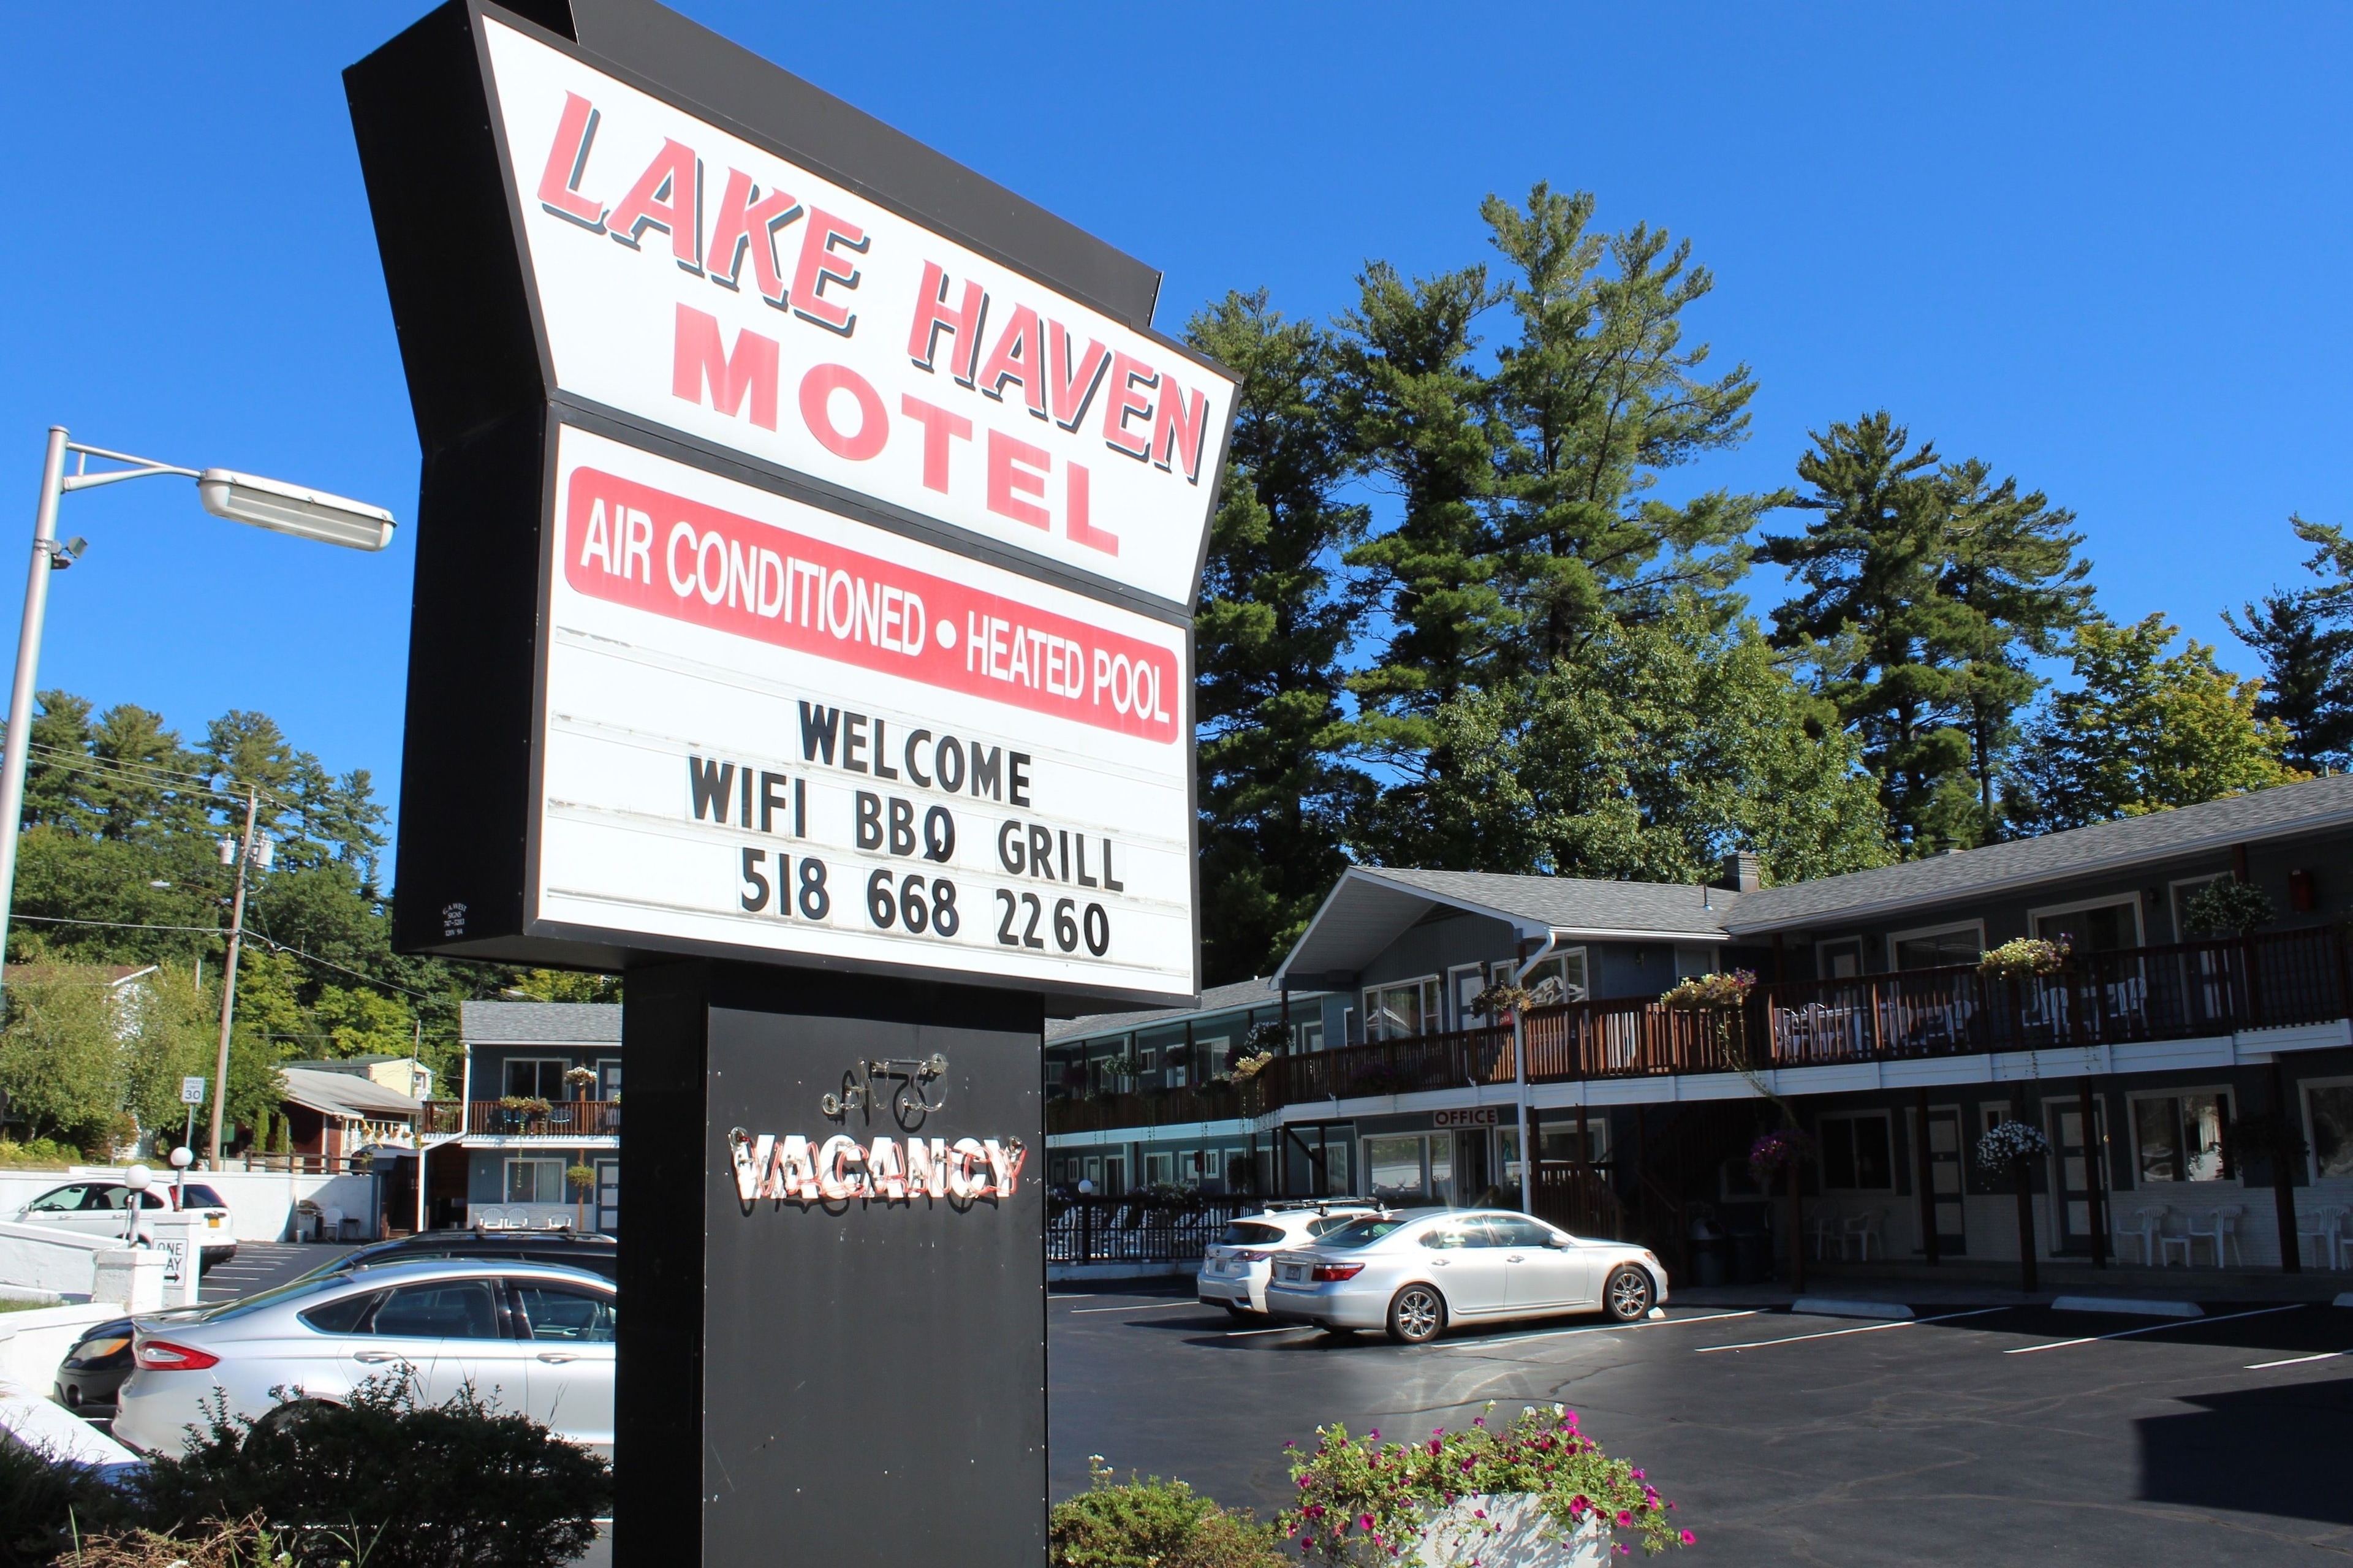 Lake Haven Motel